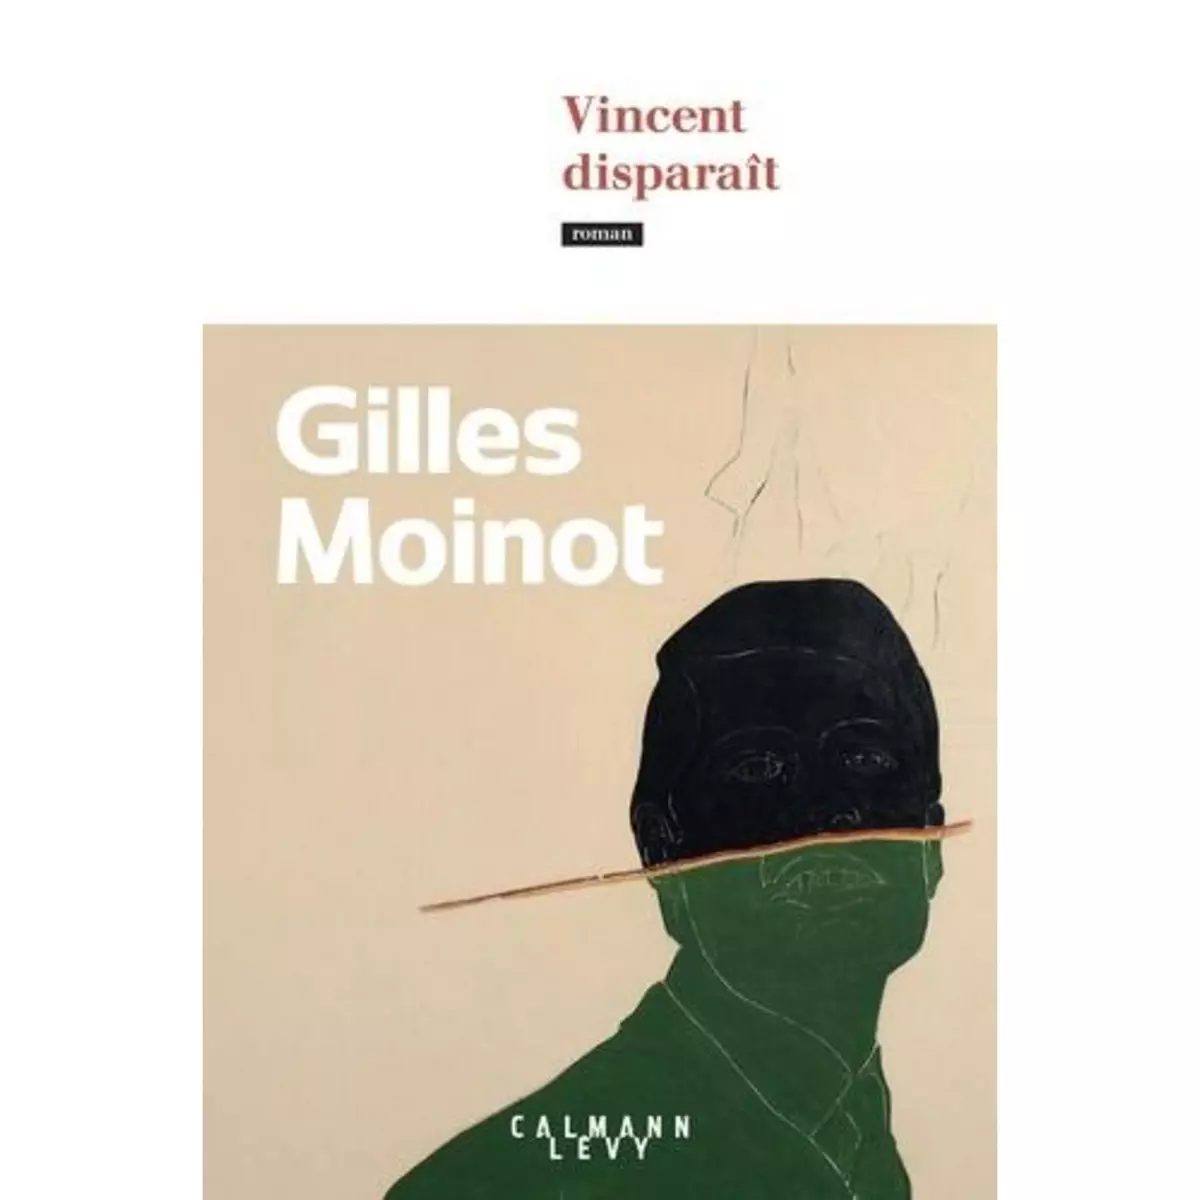  VINCENT DISPARAIT, Moinot Gilles